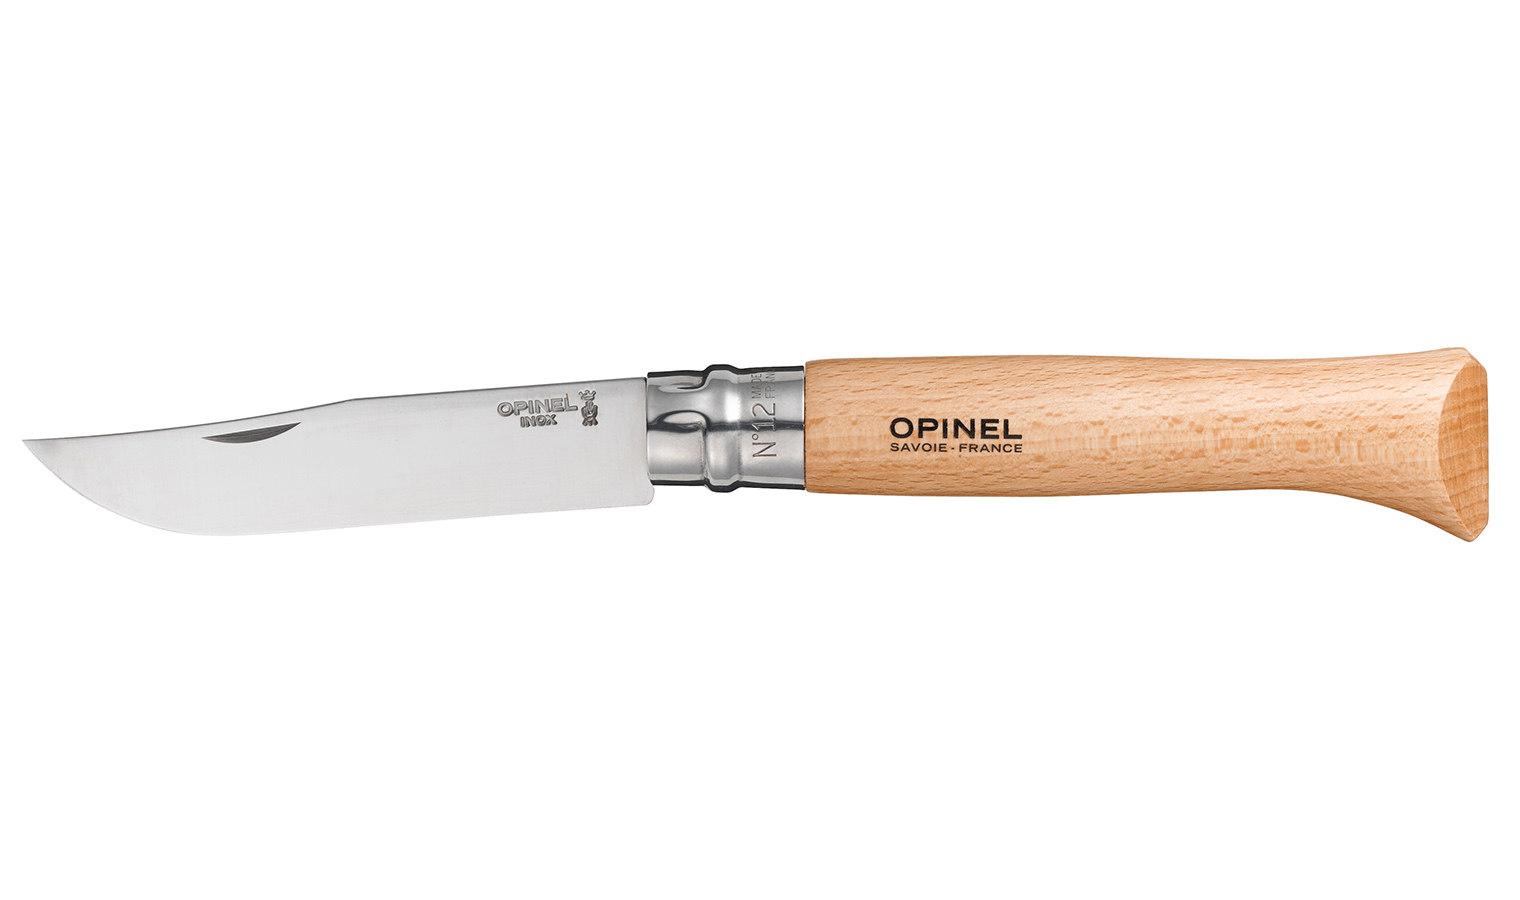 Opinel knife model virobloc n.12 stainless steel blade mm.120